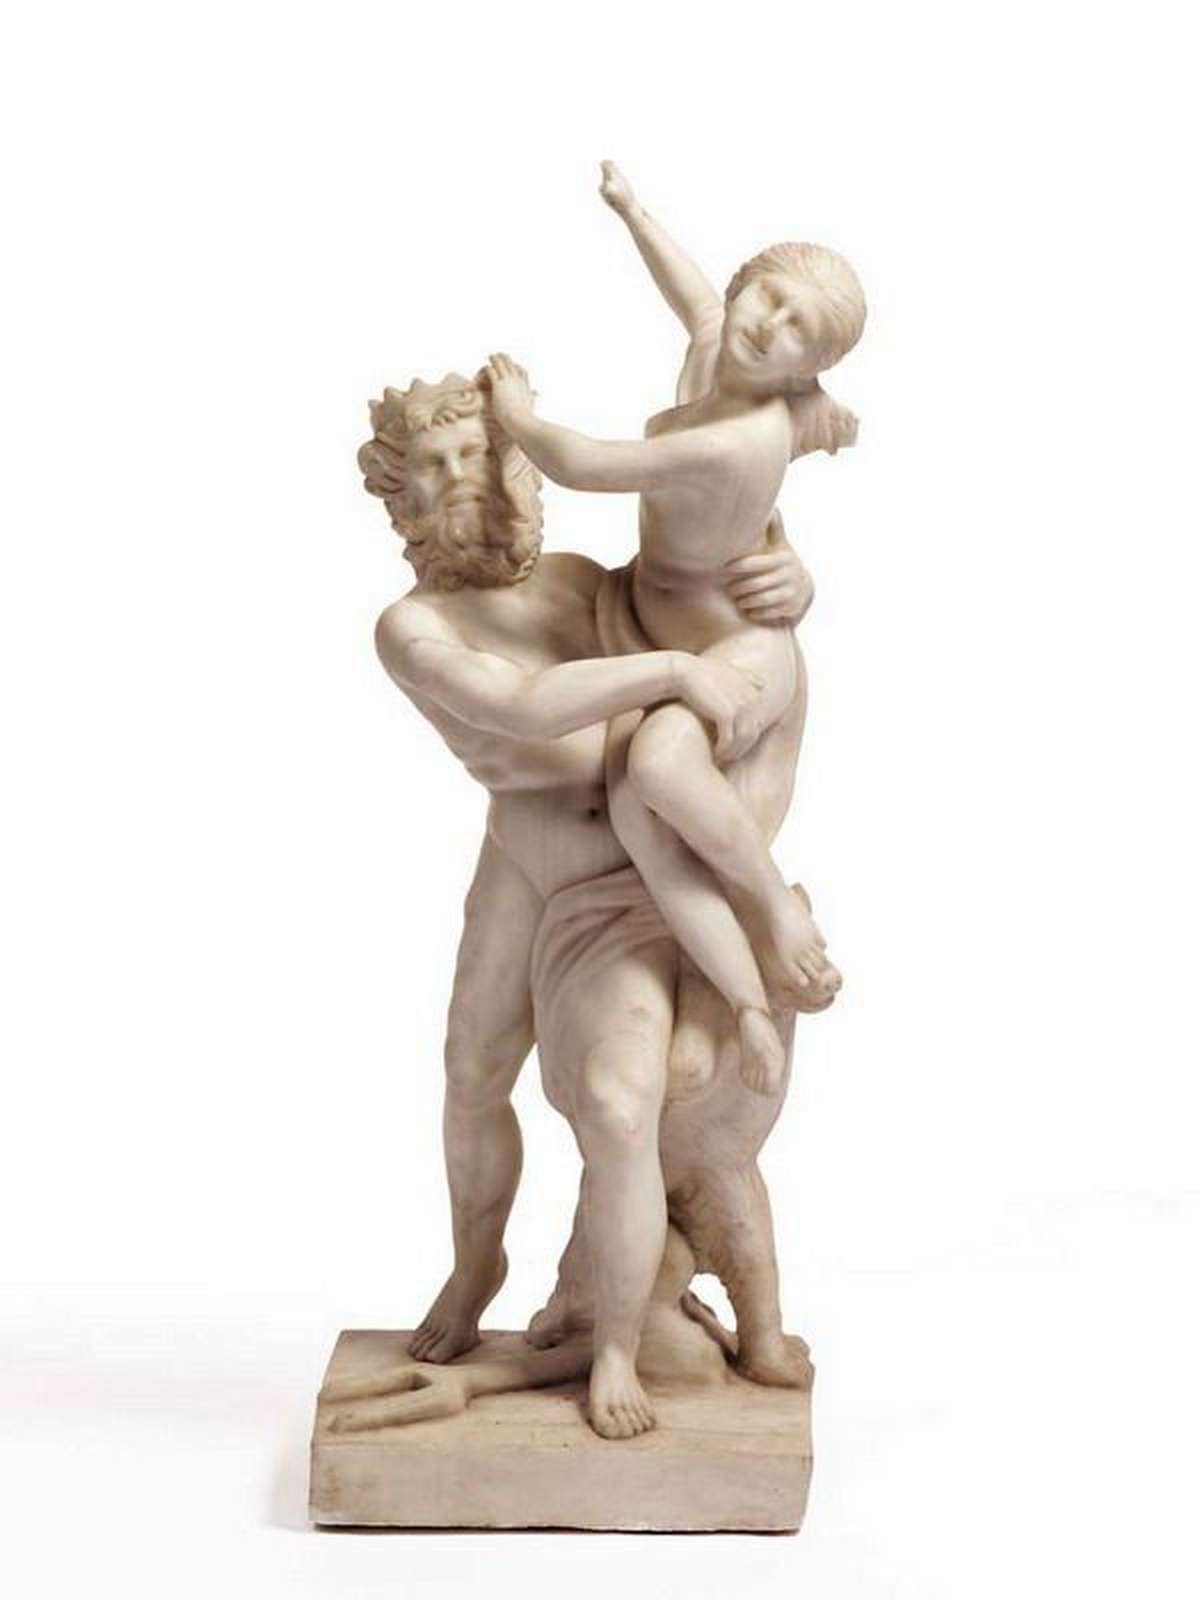 Antico gruppo scultoreo in marmo. Epoca 1800. - Statue Antiche - Sculture Antiche - Prodotti - Antichità Fiorillo